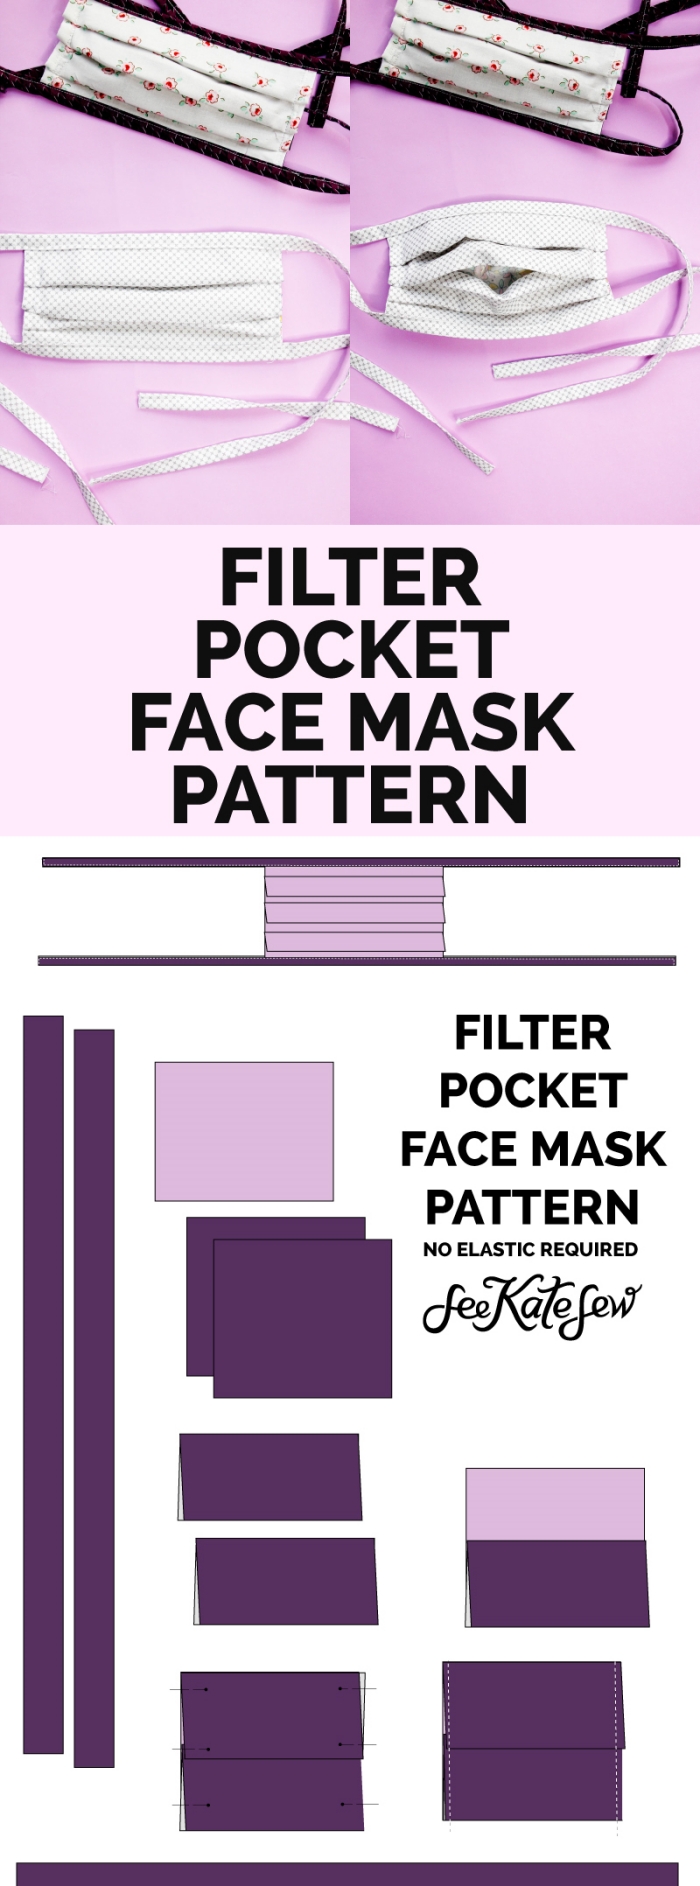 tutoriel facile comment faire un masque avec poche pour filtre, bricolage confinement facile, DIY masque avec filtre